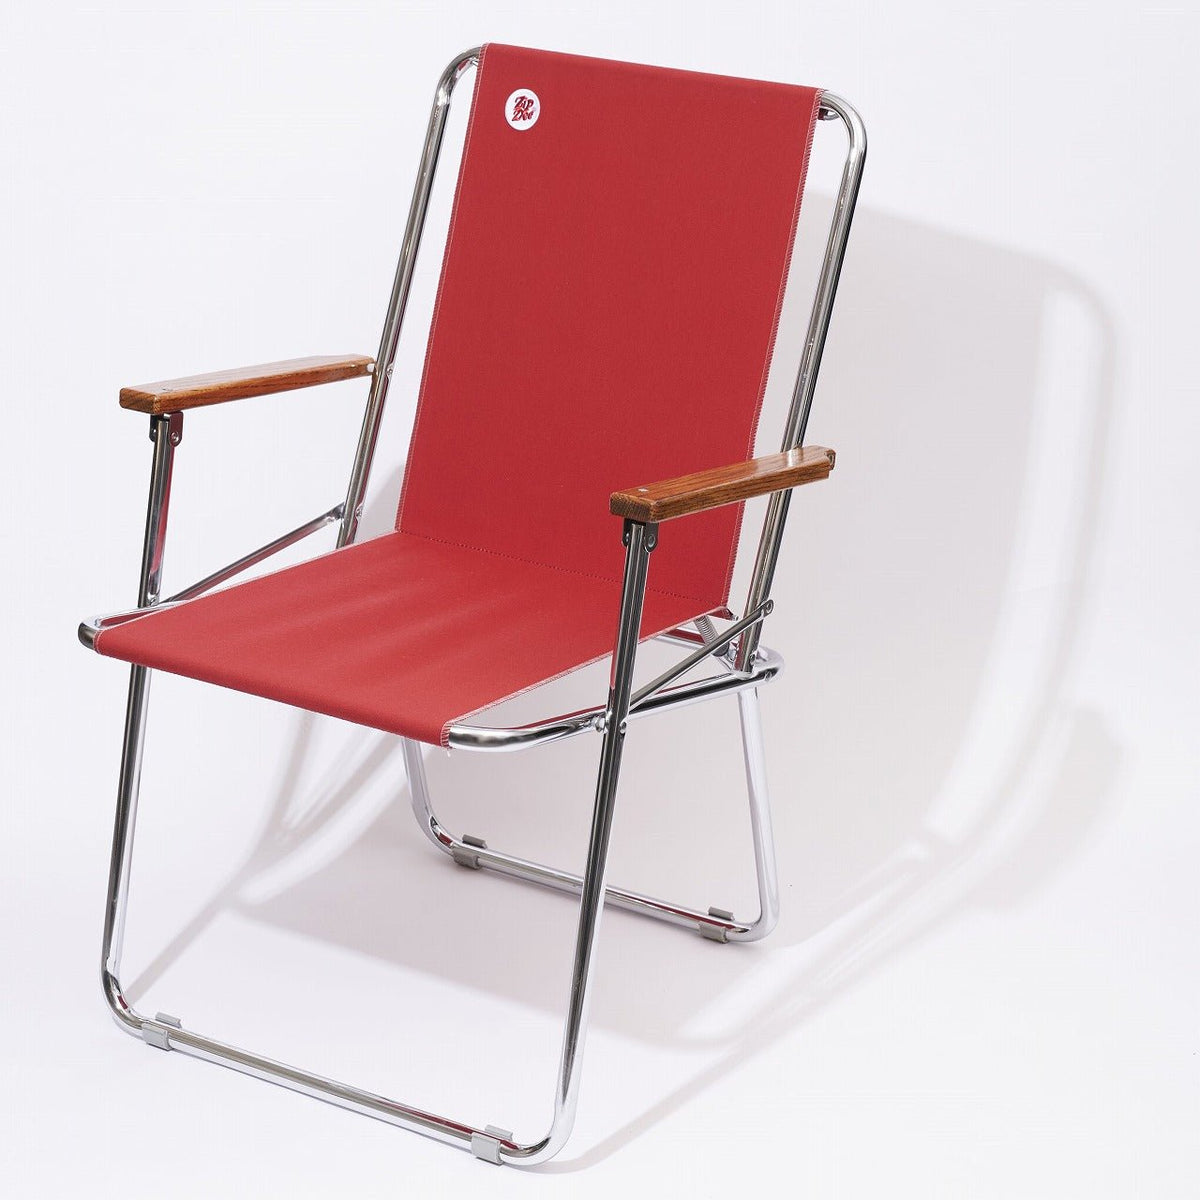 ZipDee CHAIR col. 4603 [Jockey Red] – ZipDee Awning & Chair / Solo 